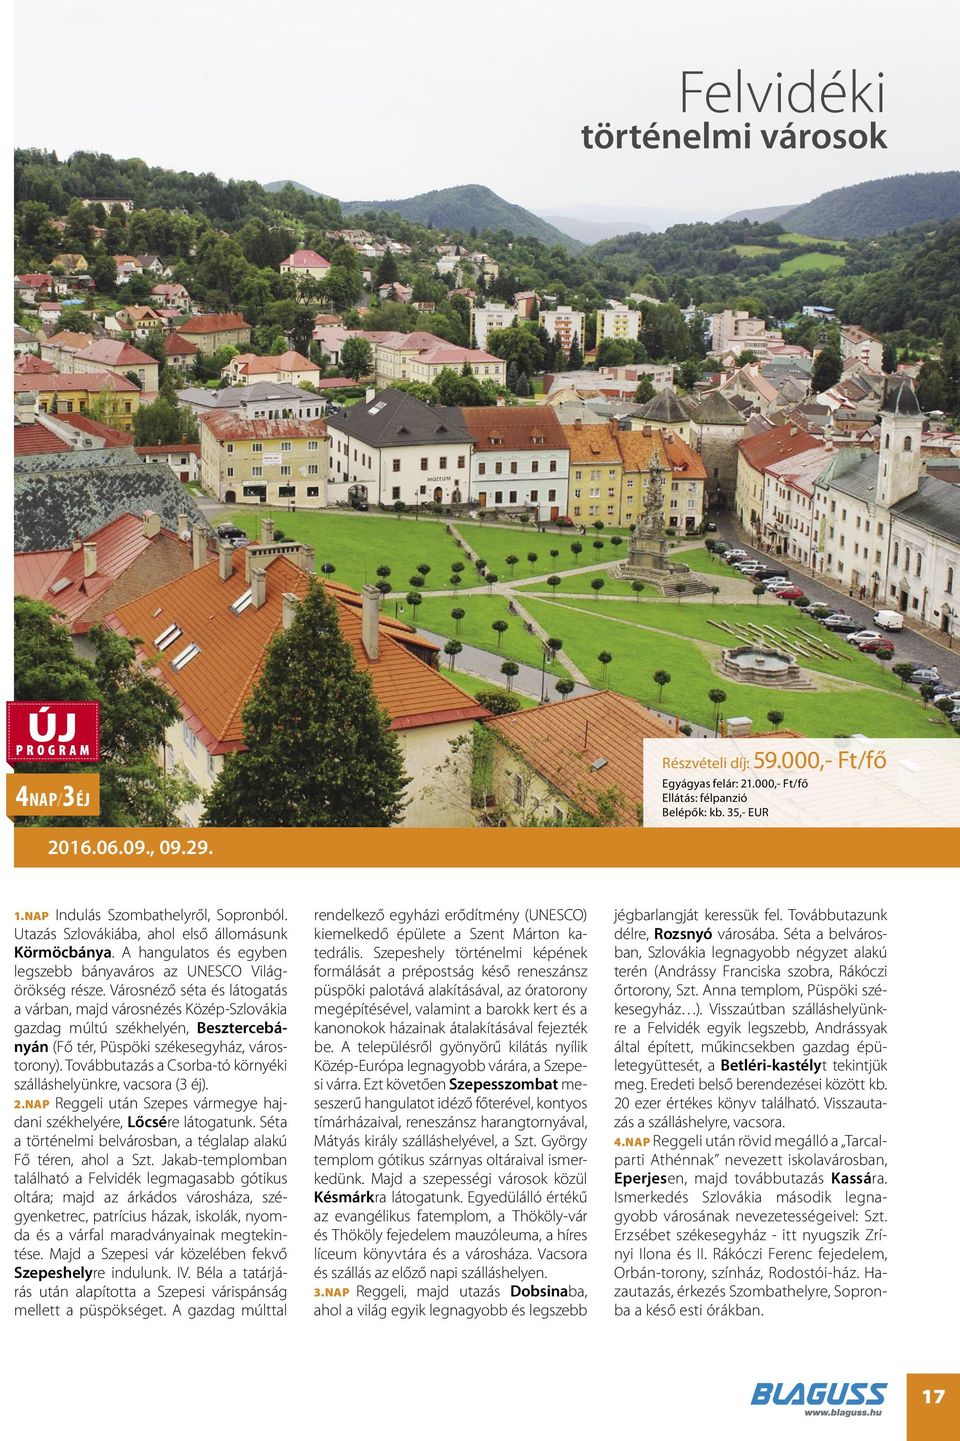 Városnéző séta és látogatás a várban, majd városnézés Közép-Szlovákia gazdag múltú székhelyén, Besztercebányán (Fő tér, Püspöki székesegyház, várostorony).